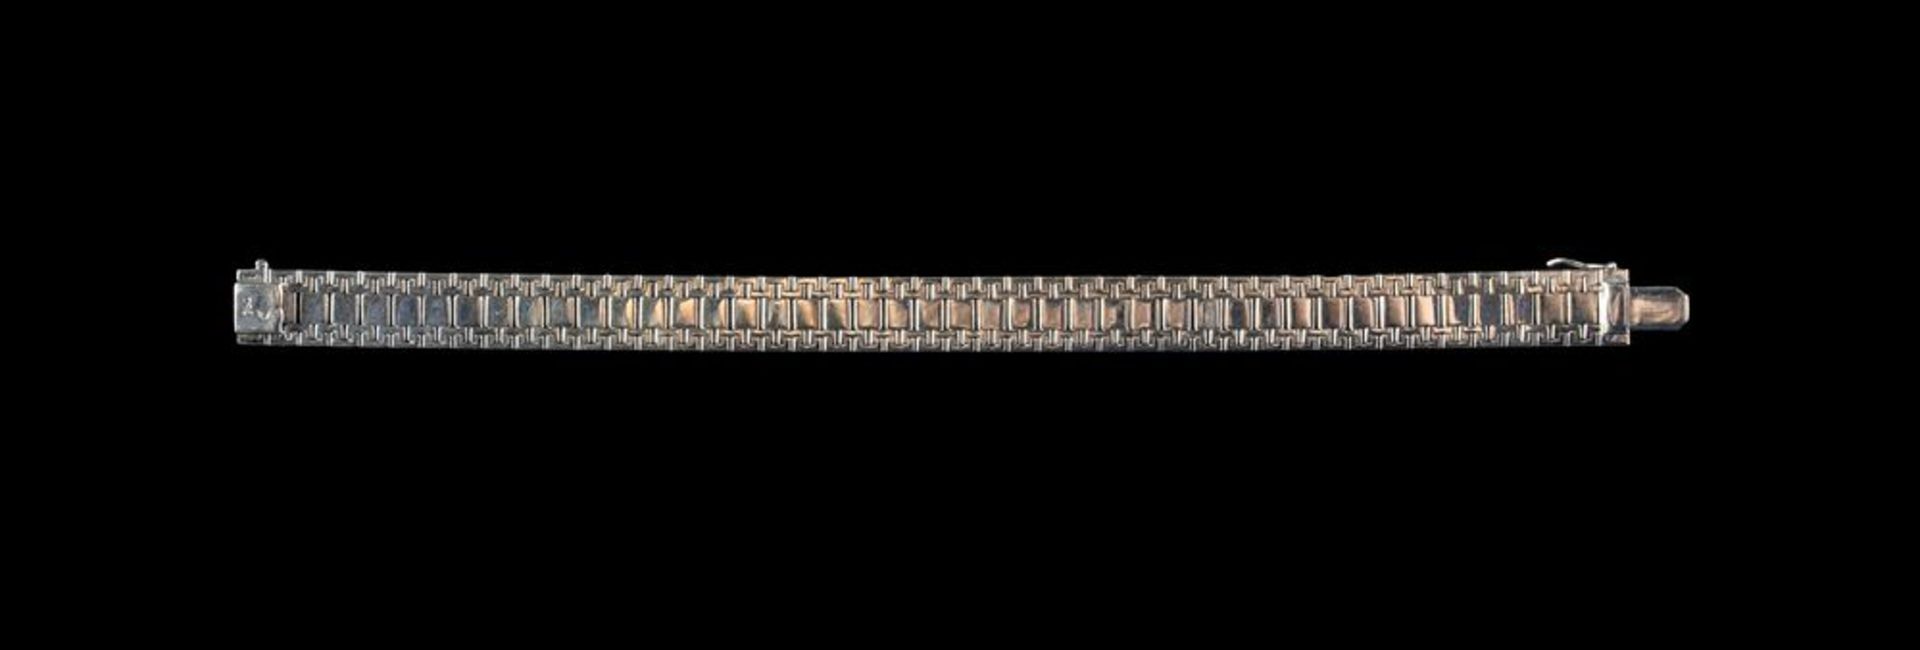 BRACCIALE IN ORO BIANCO CON ZAFFIRI Prestigioso bracciale in oro bianco 18k con zaffiri taglio brill - Image 2 of 4